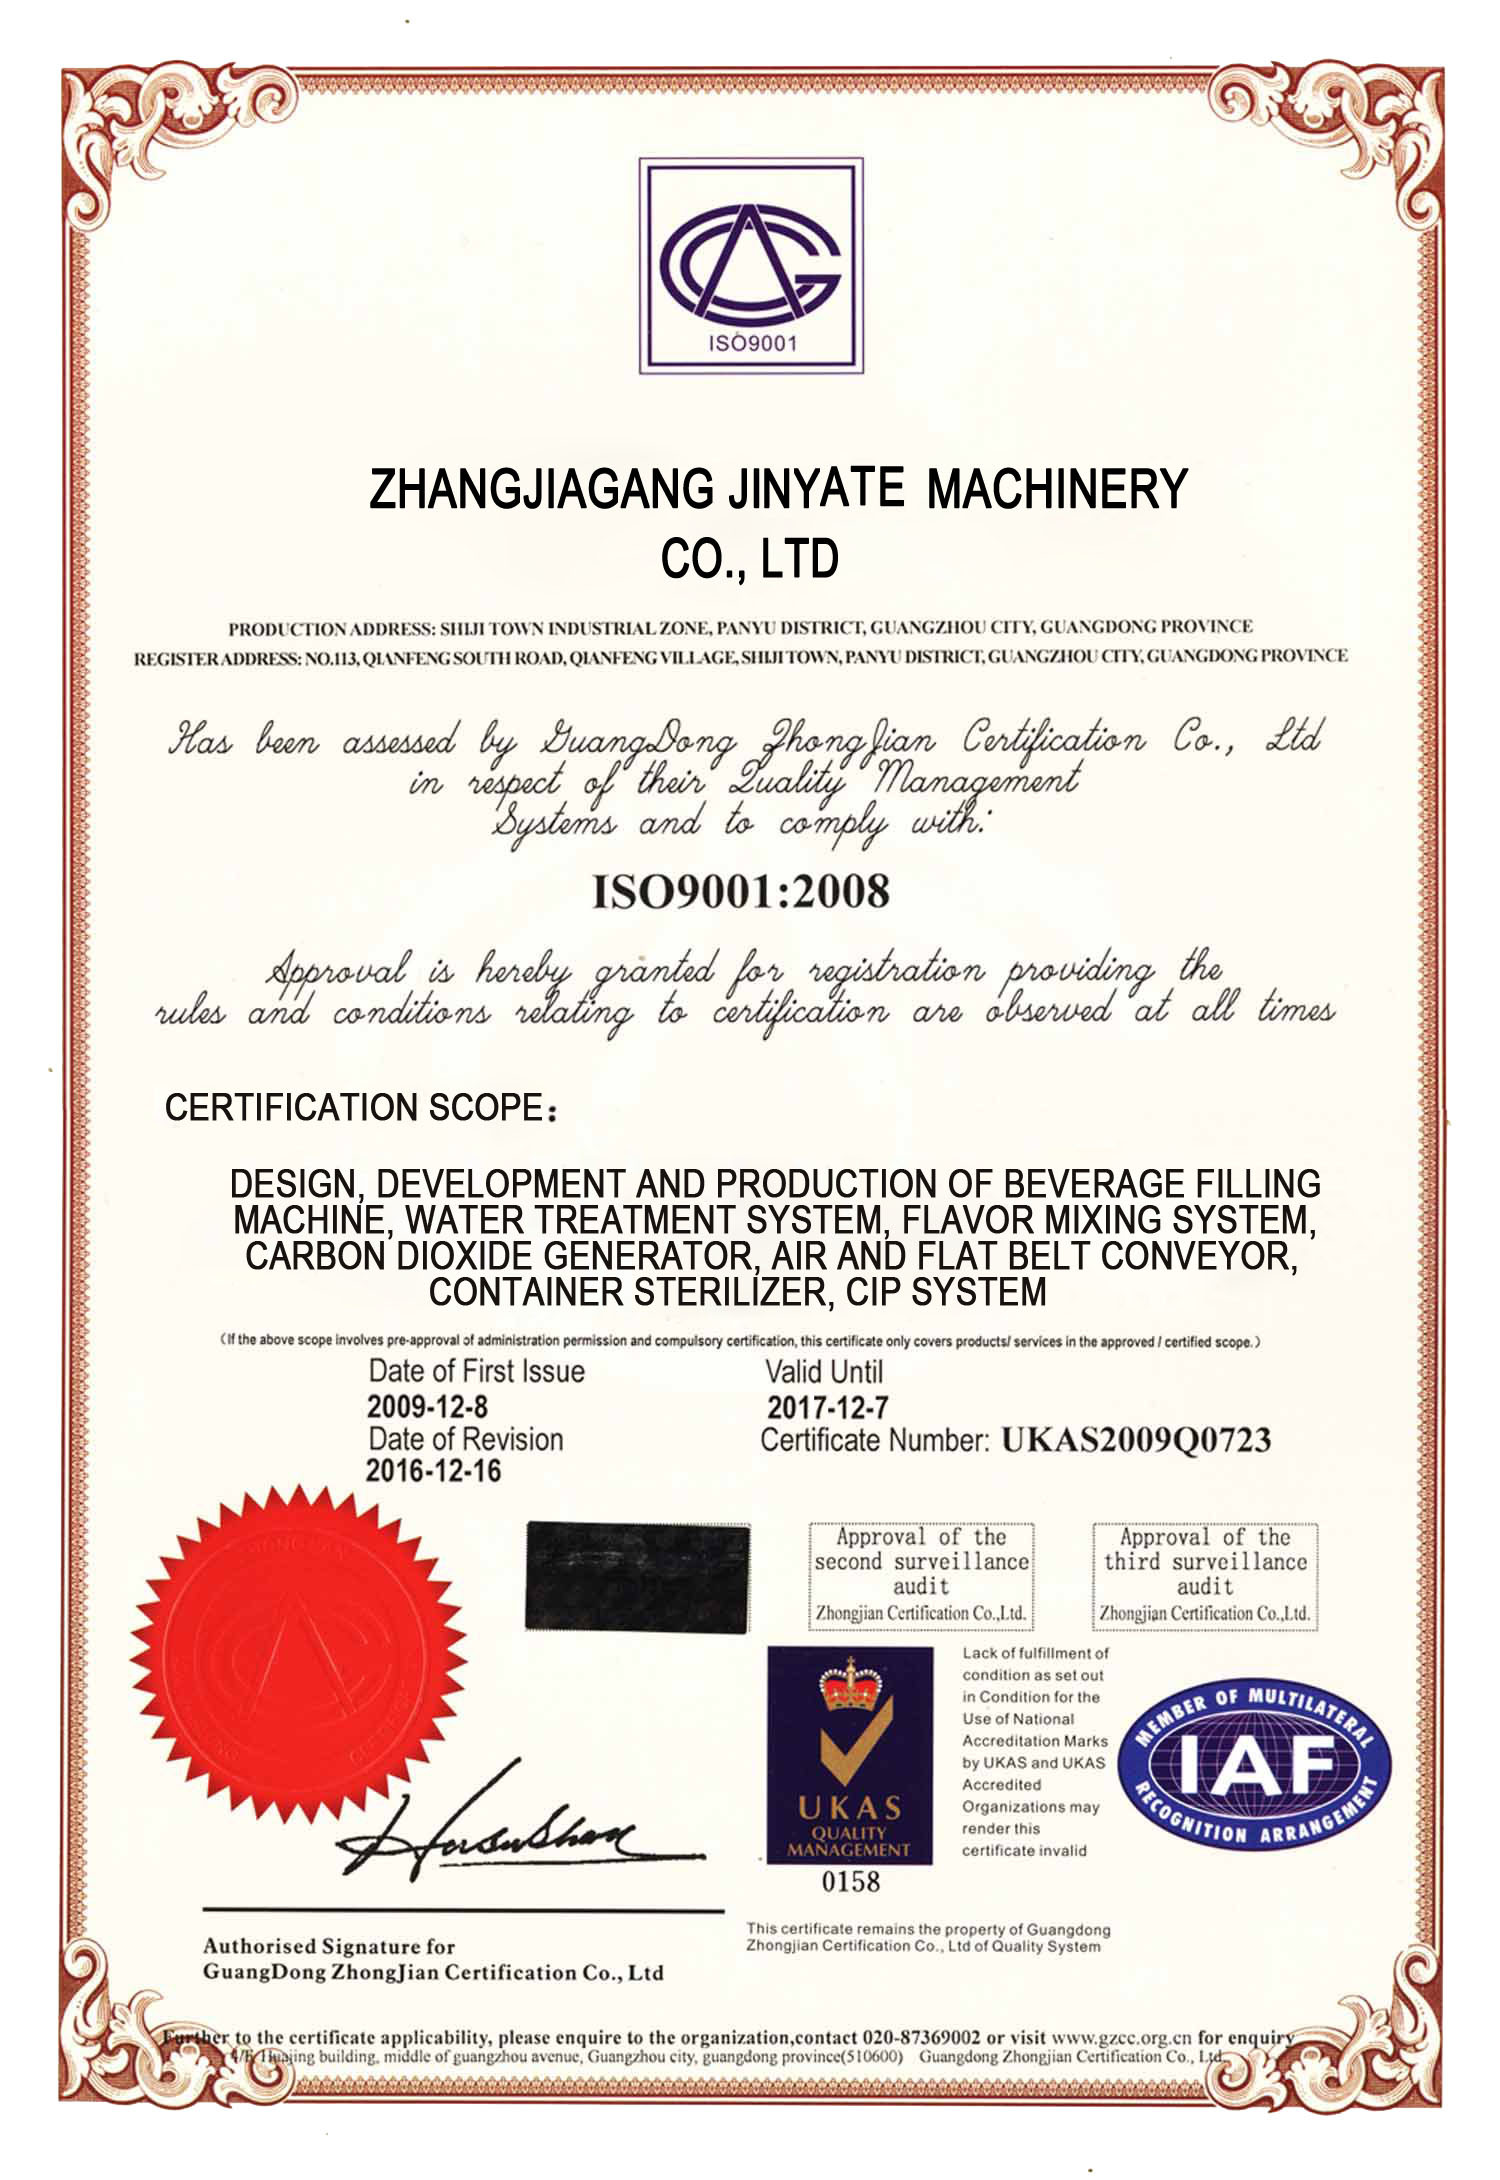 Zhangjiagang Jinyate Machinery Co., Ltd Certifications